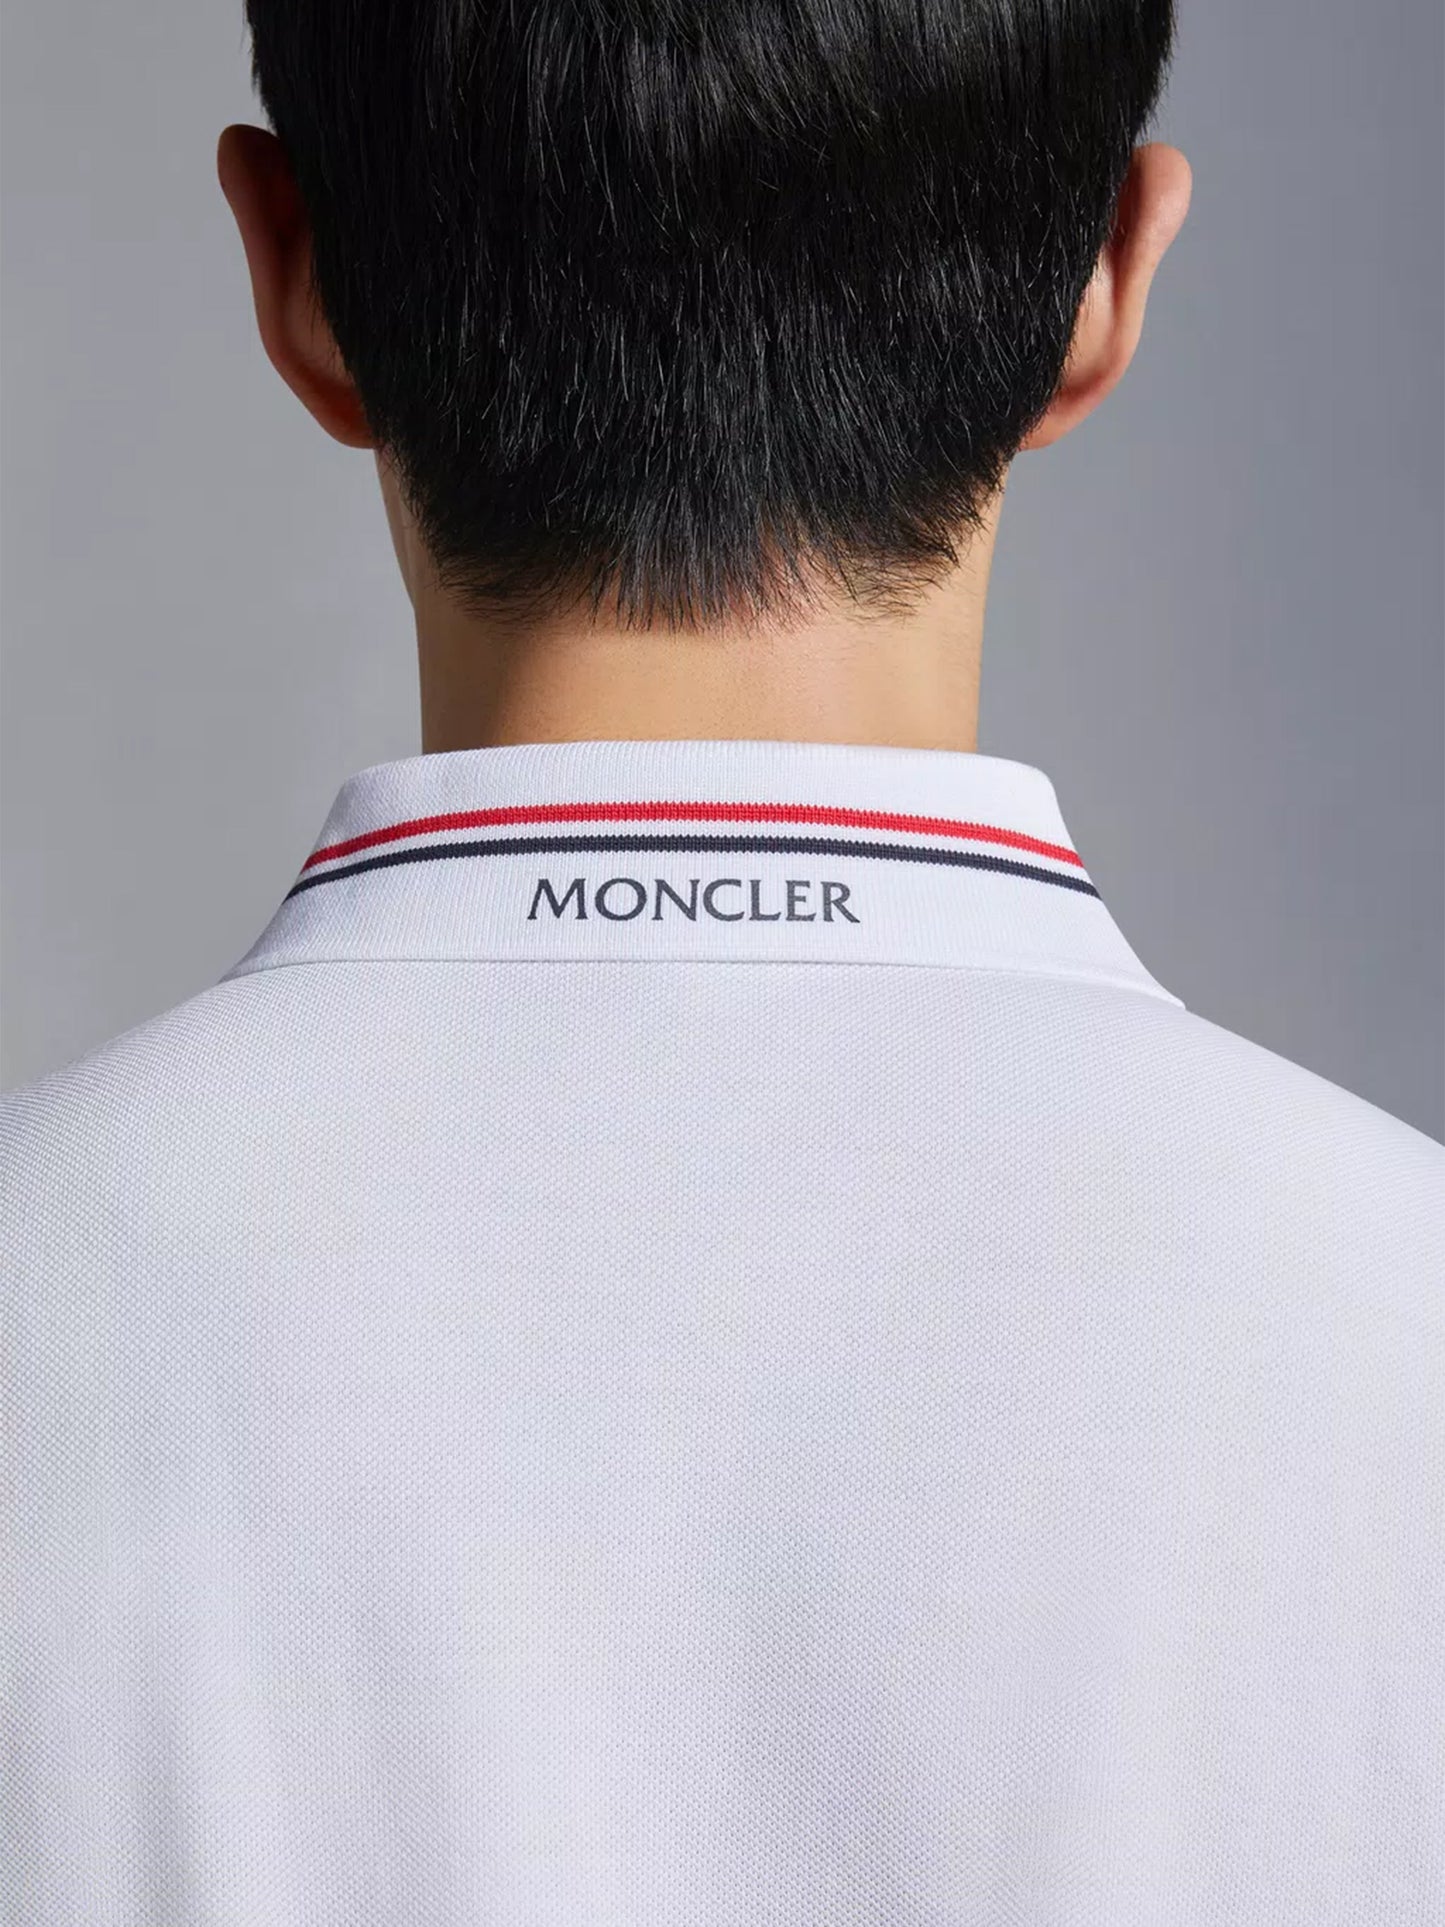 MONCLER - Poloshirt mit Logoaufnäher